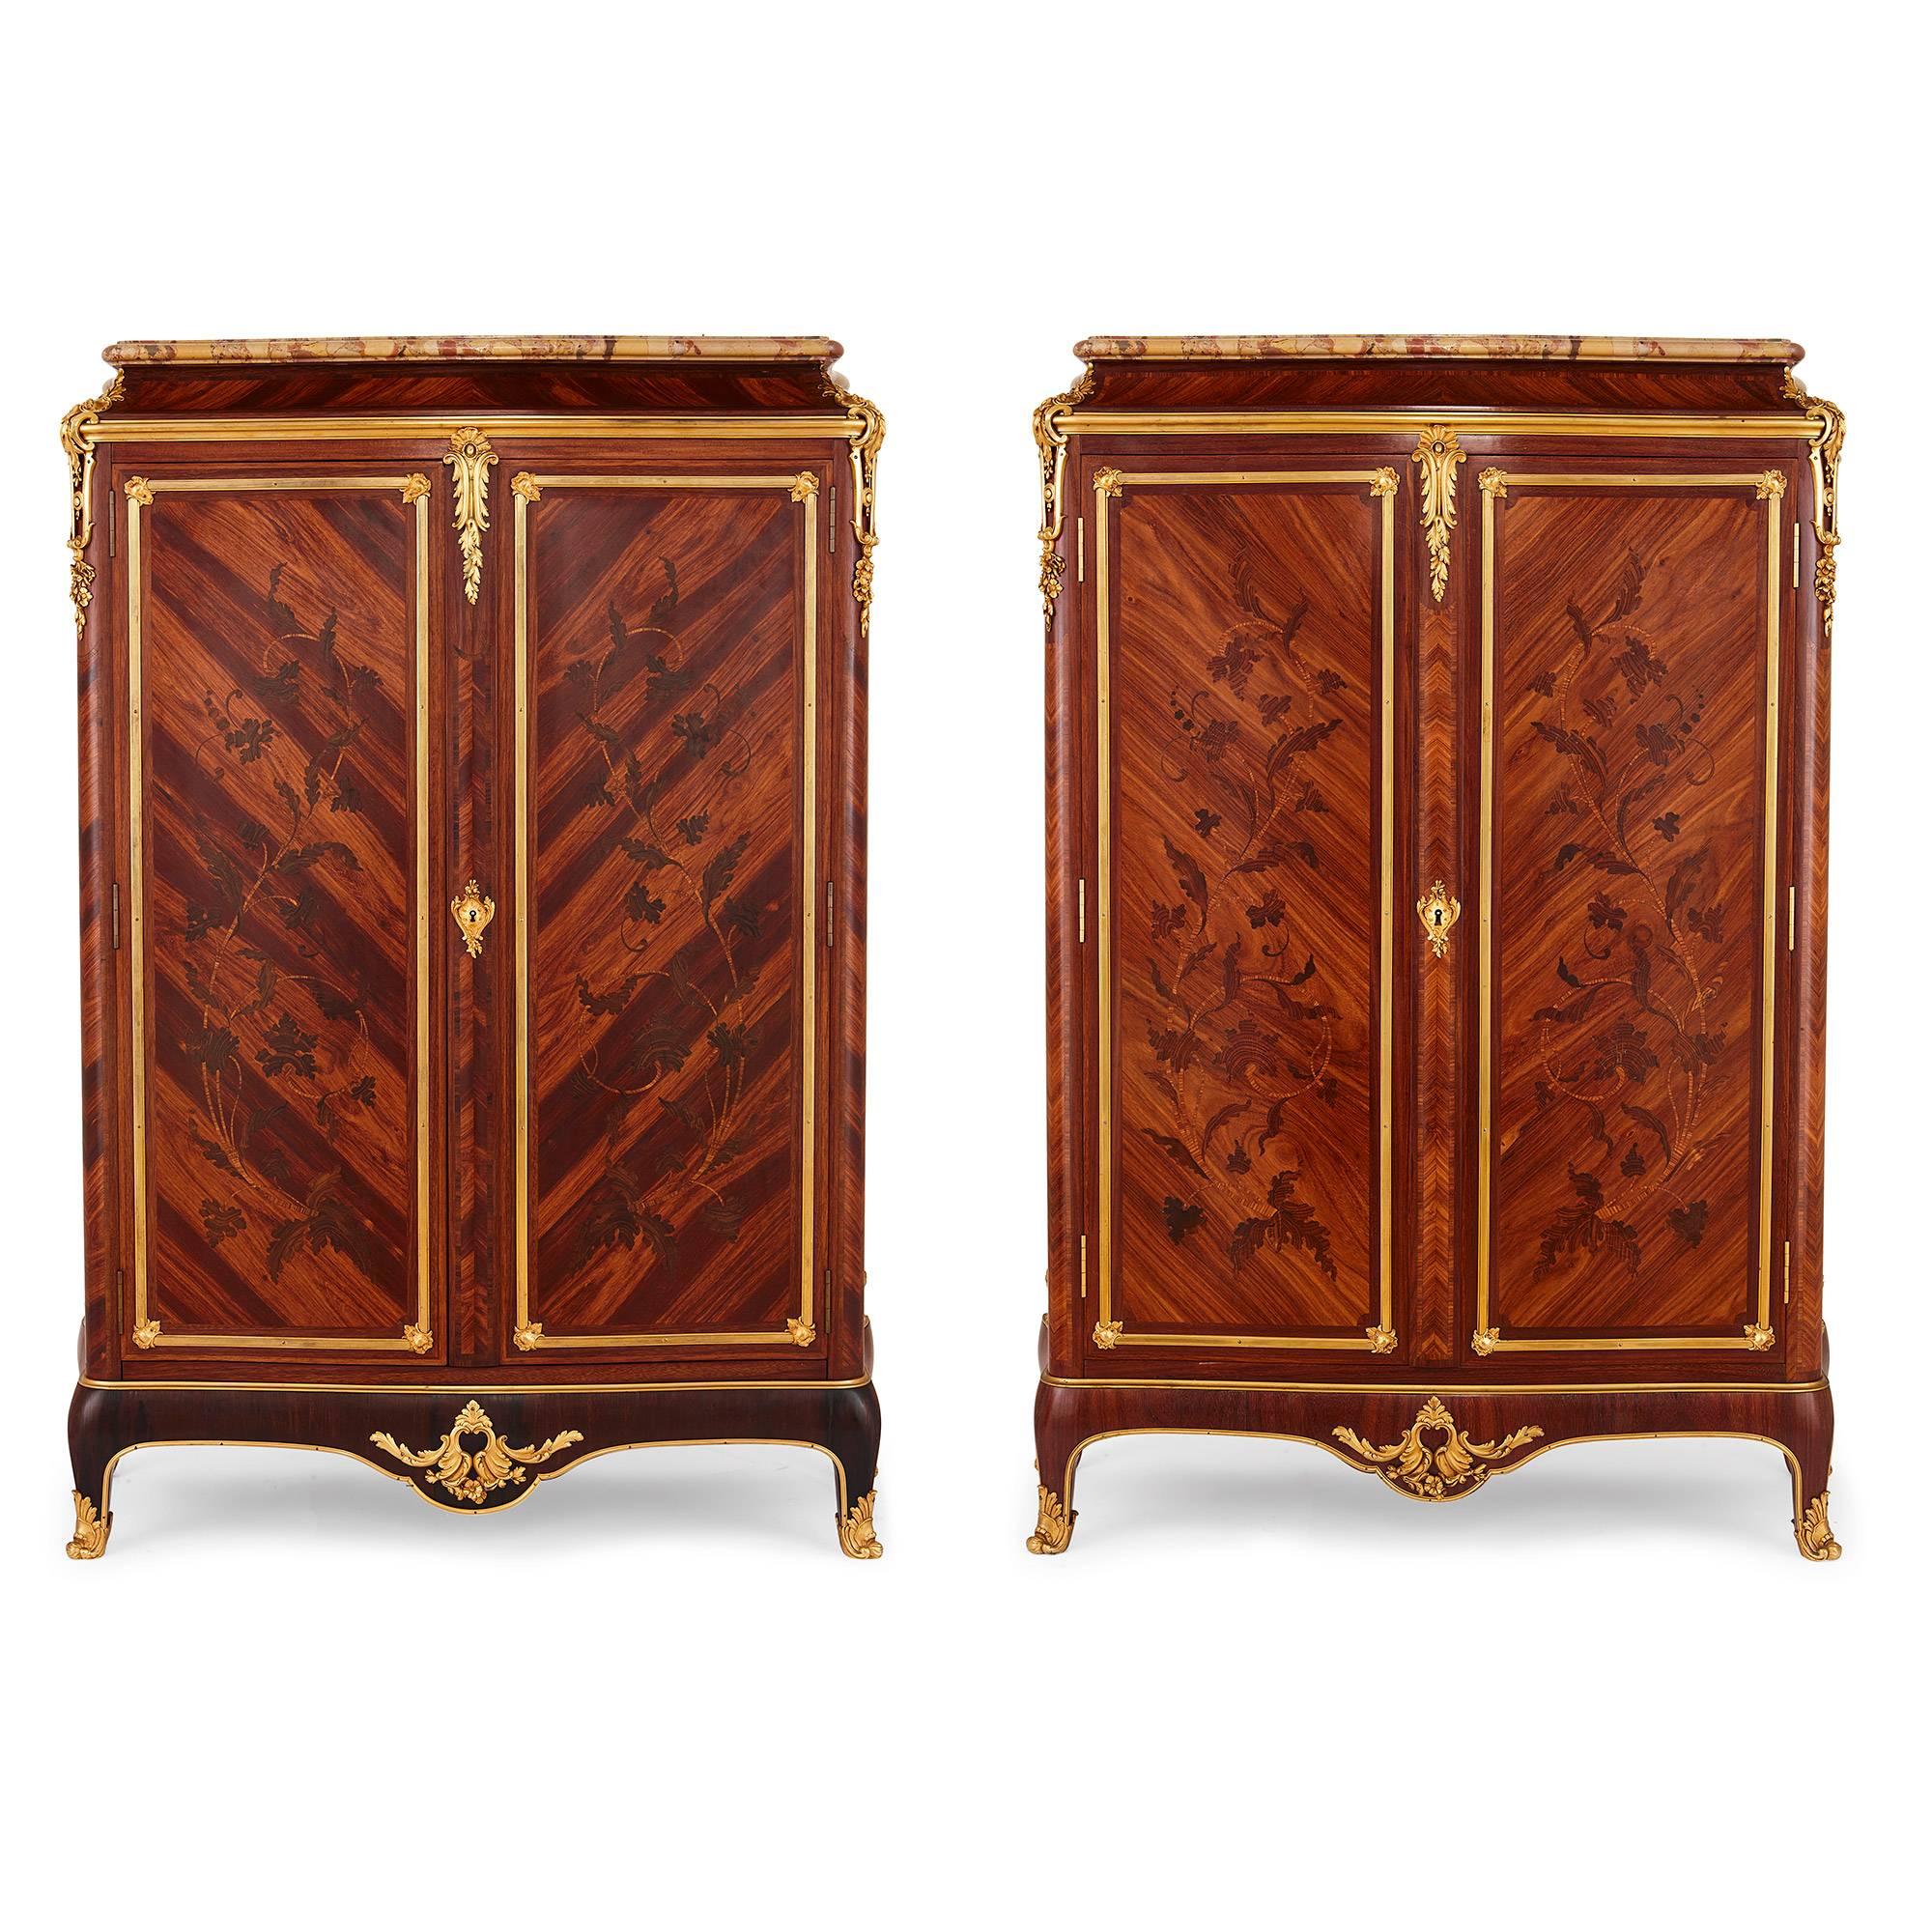 Gervais Durand est un fabricant de meubles exceptionnel de la fin du XIXe siècle, connu surtout pour ses reproductions d'œuvres du XVIIIe siècle, mais aussi pour ses créations d'une étonnante originalité. Ces armoires présentent quelques-unes de ses